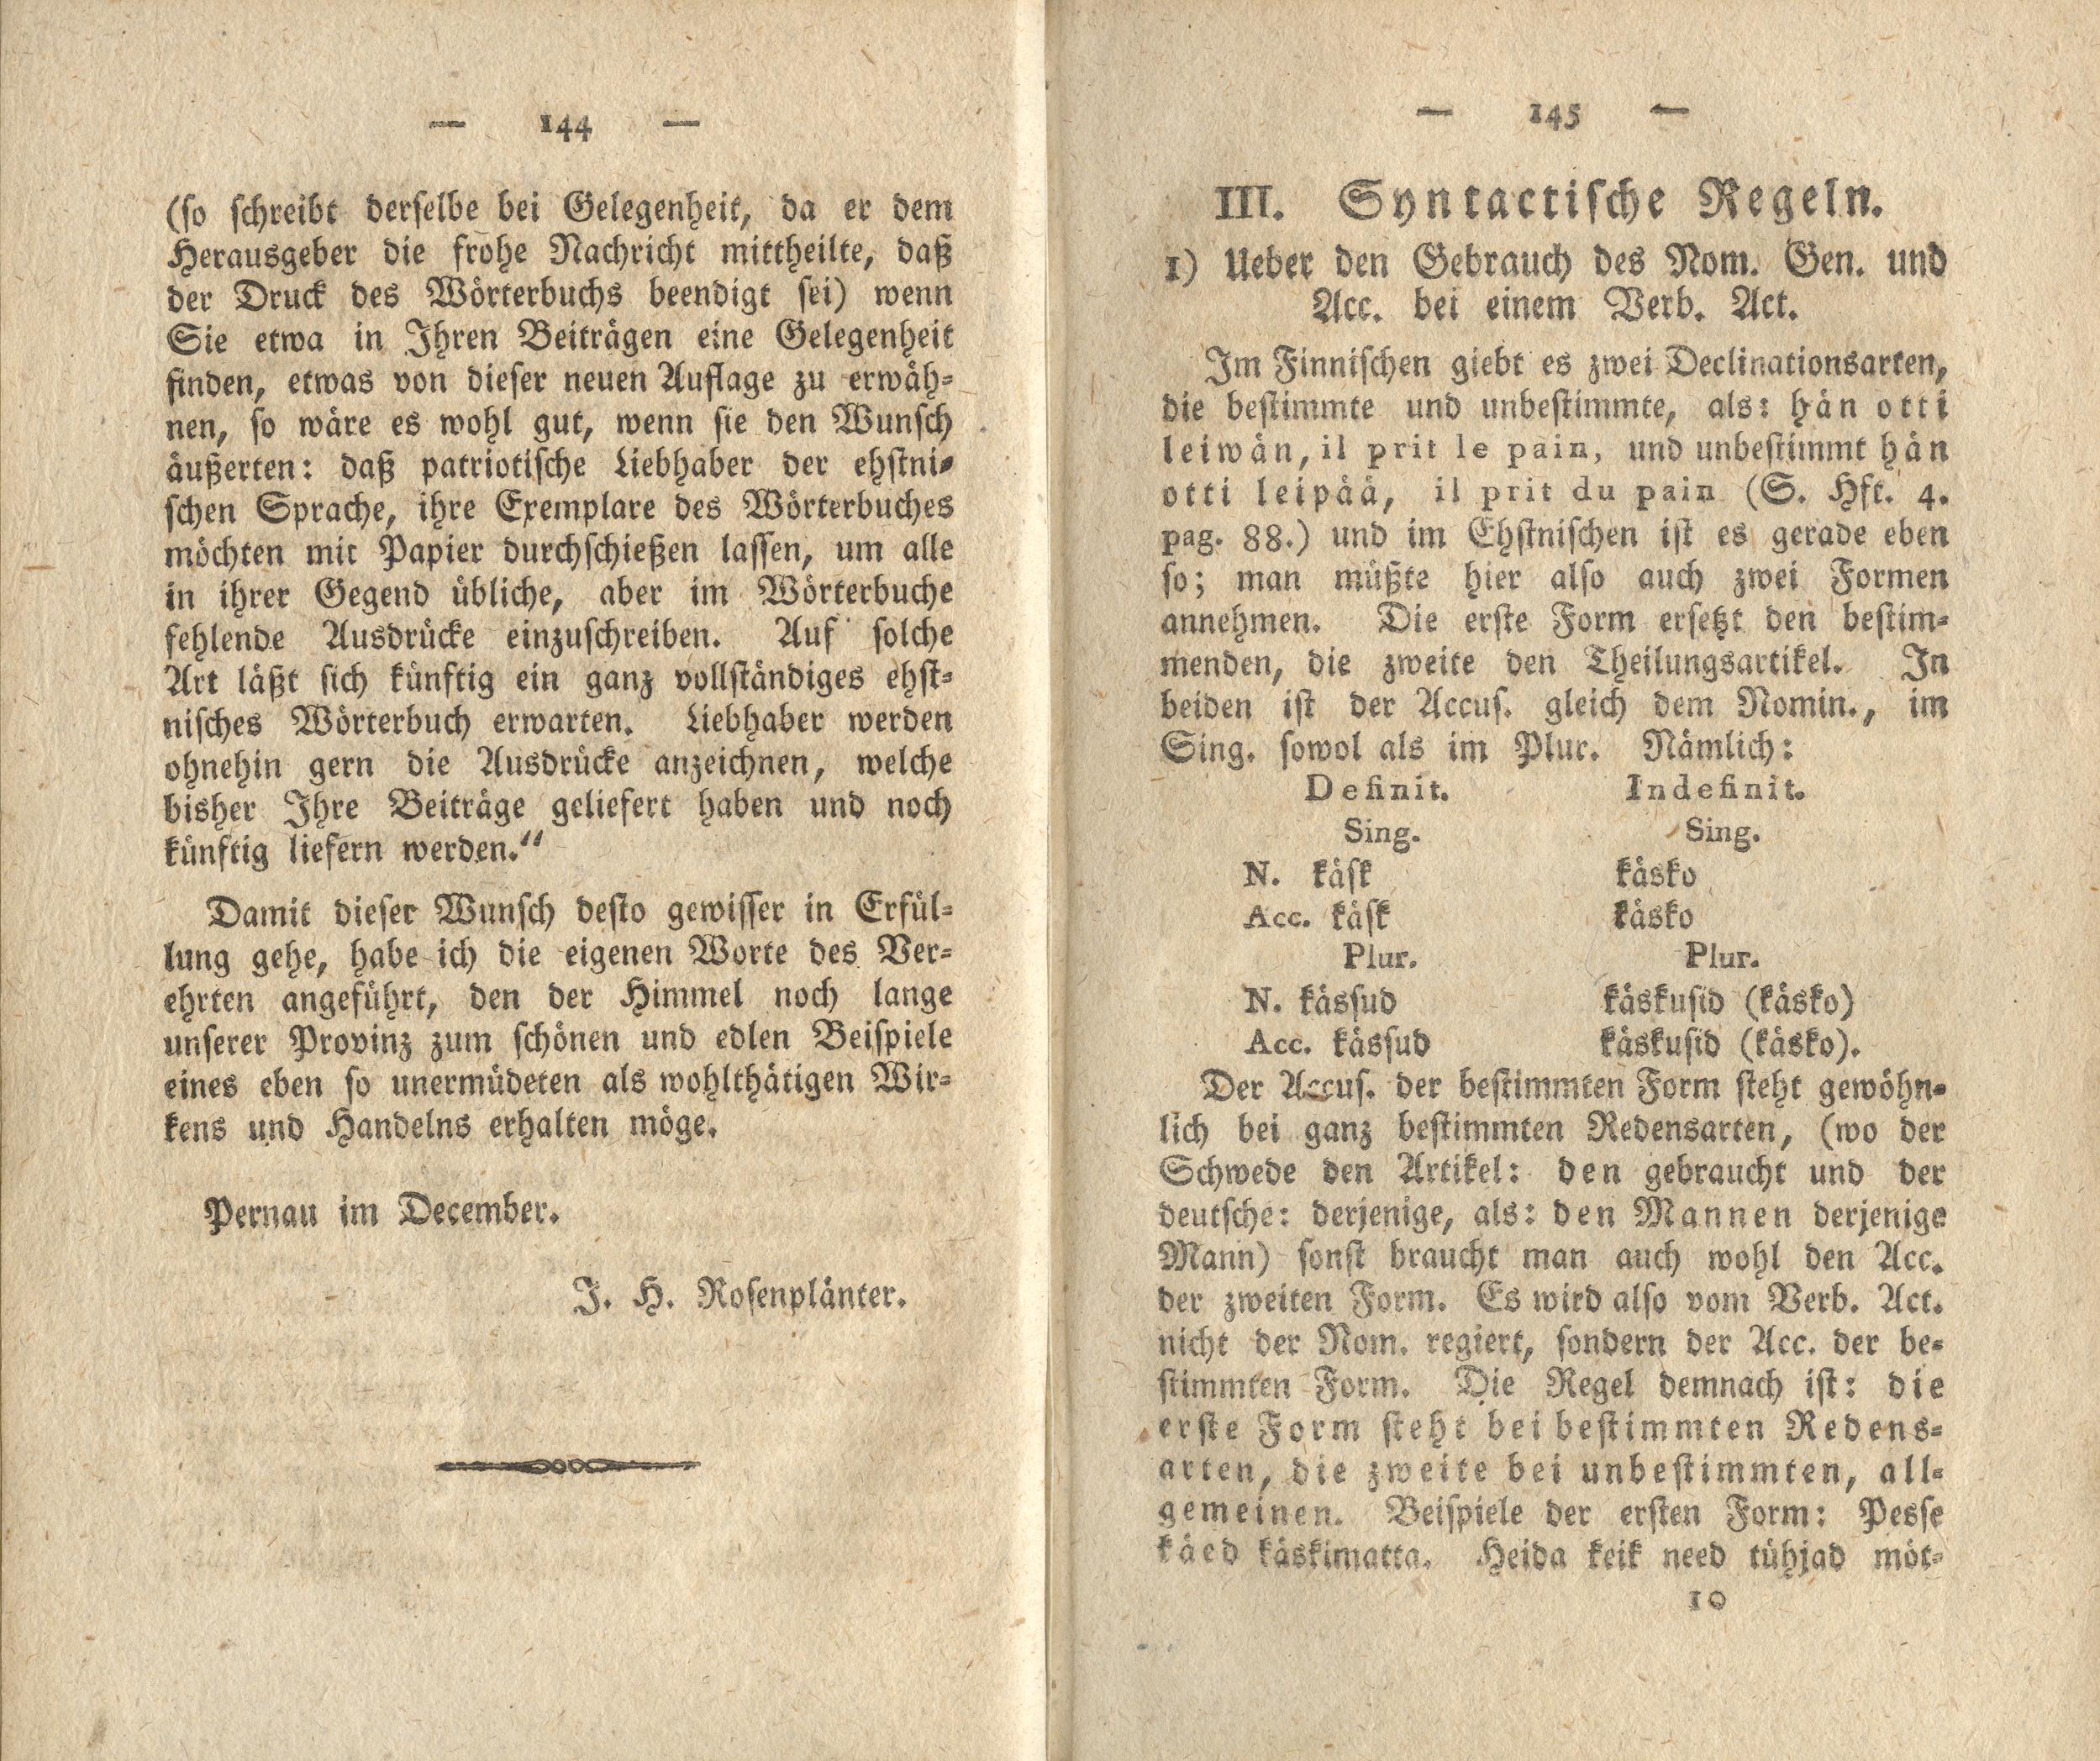 Ueber den Gebrauch des Nom. Gen. und Acc. bei einem Verb. Act. (1818) | 1. (144-145) Põhitekst